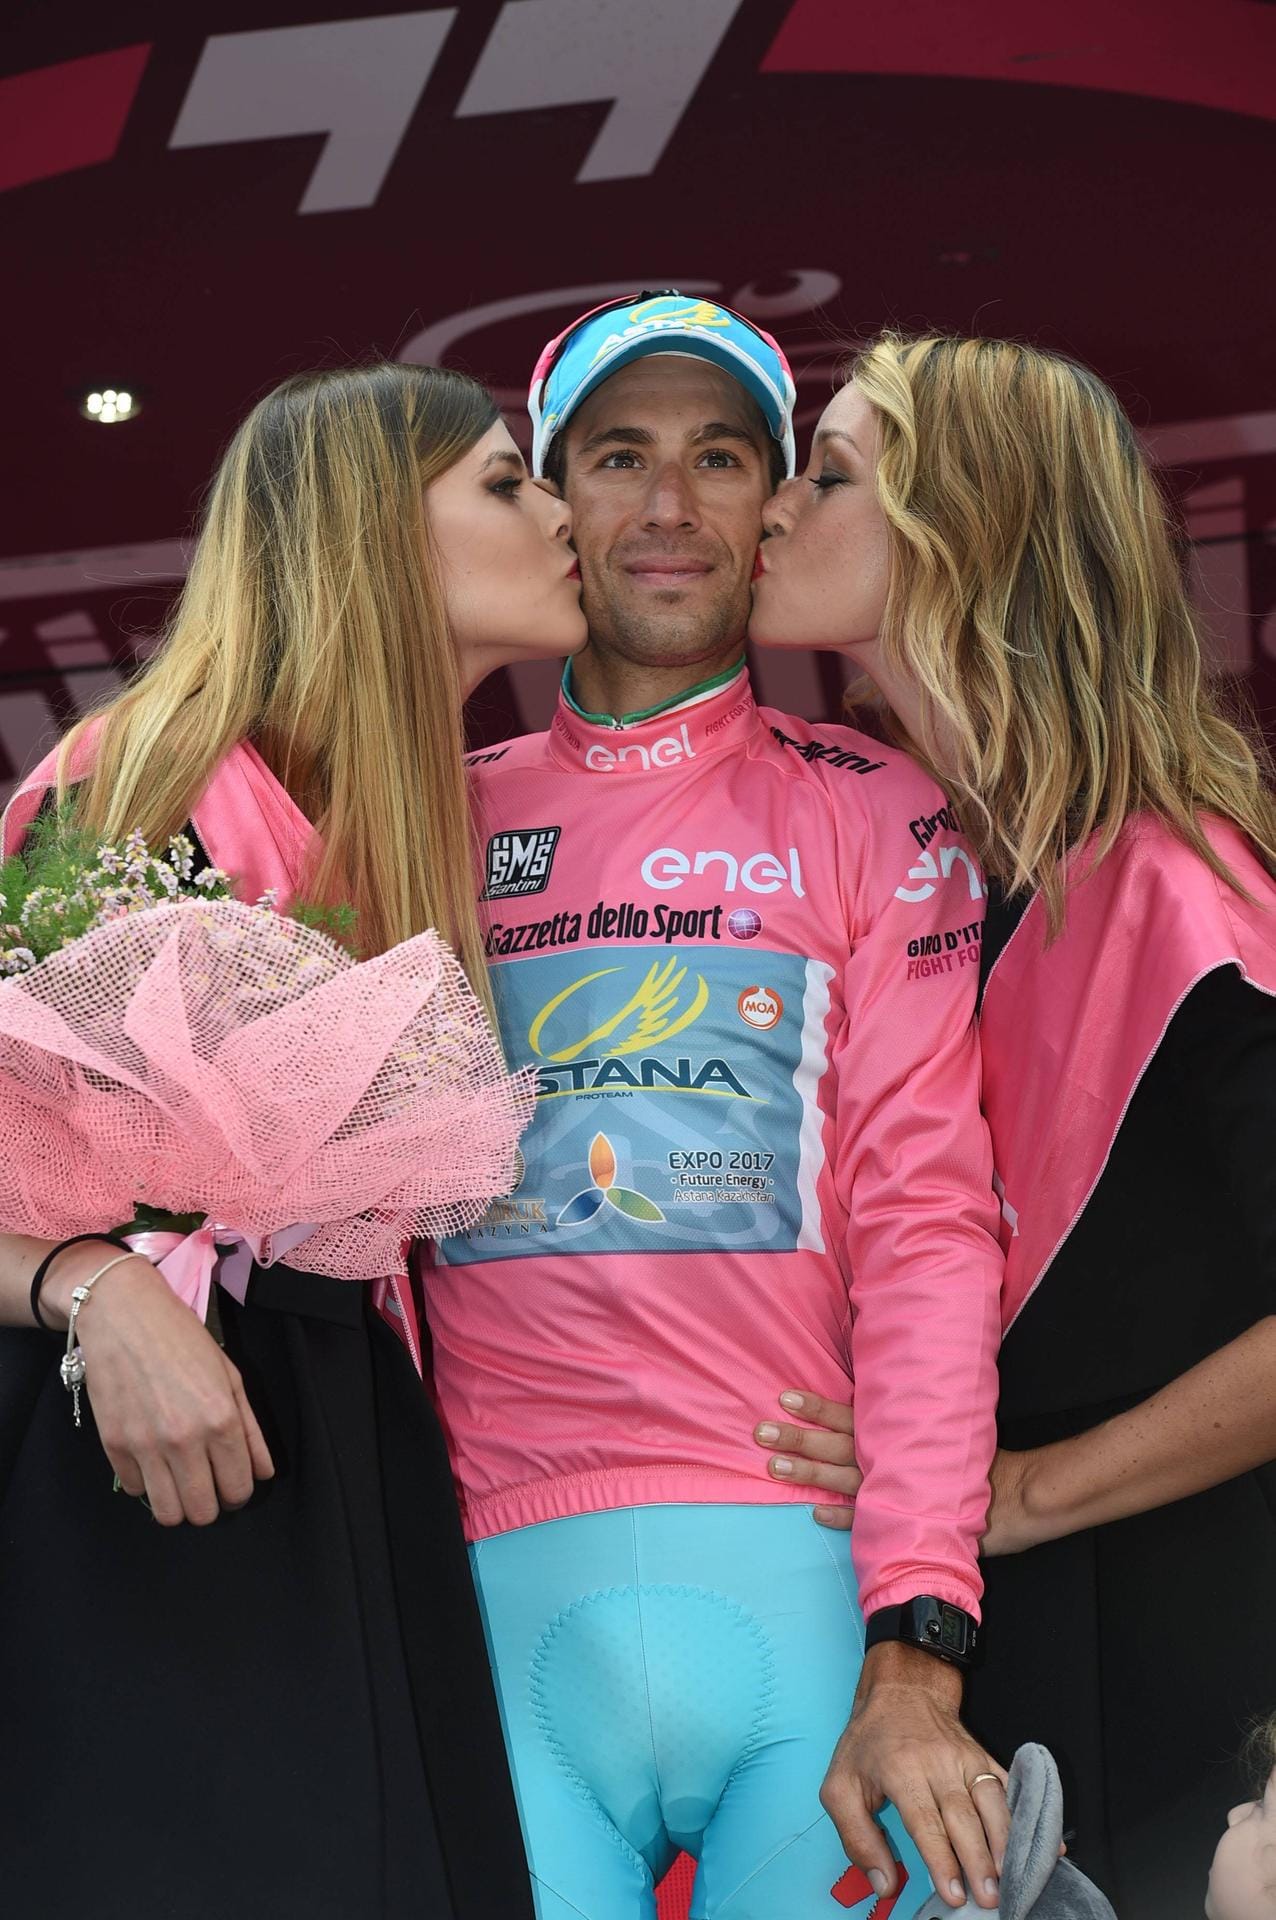 Zum Anbeißen: Vincenzo Nibali schmeckte nach seinem Sieg beim Giro d'Italia sicherlich besonders gut.